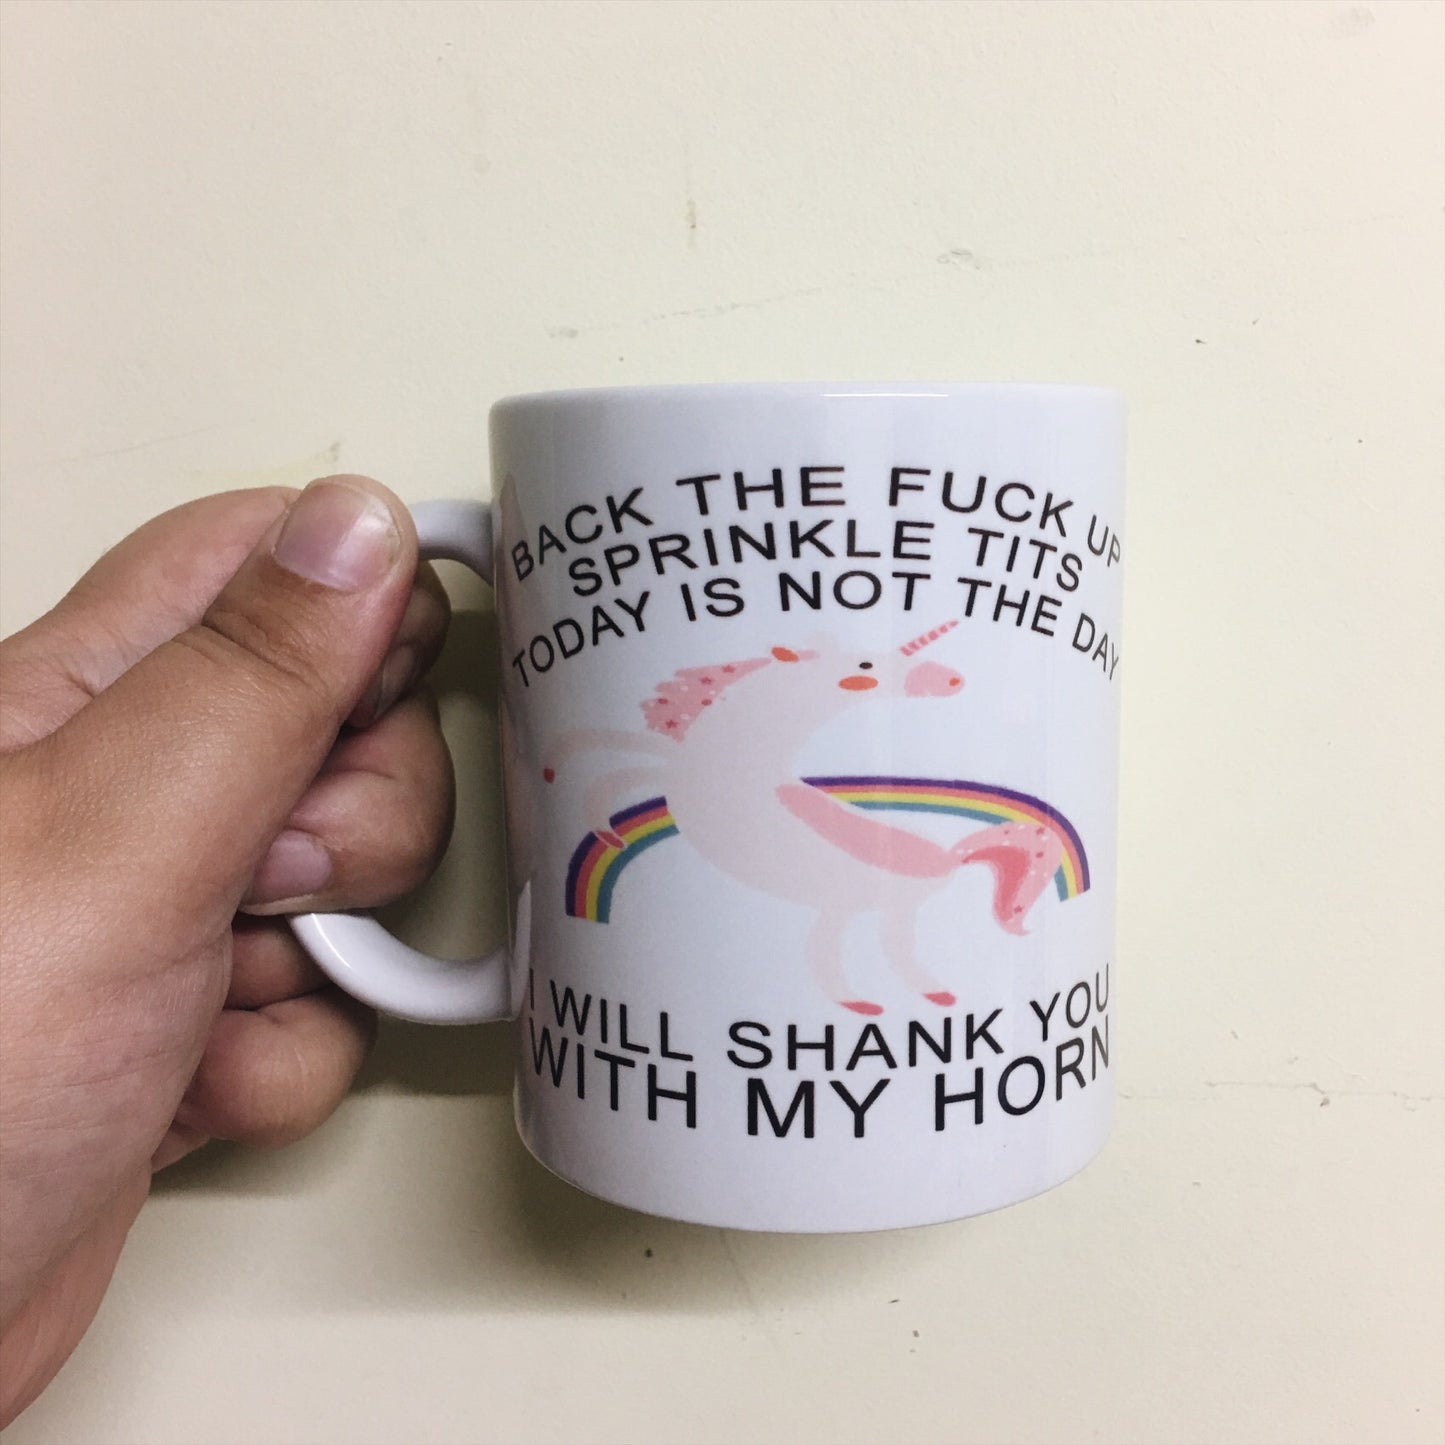 Shank you with my horn mug